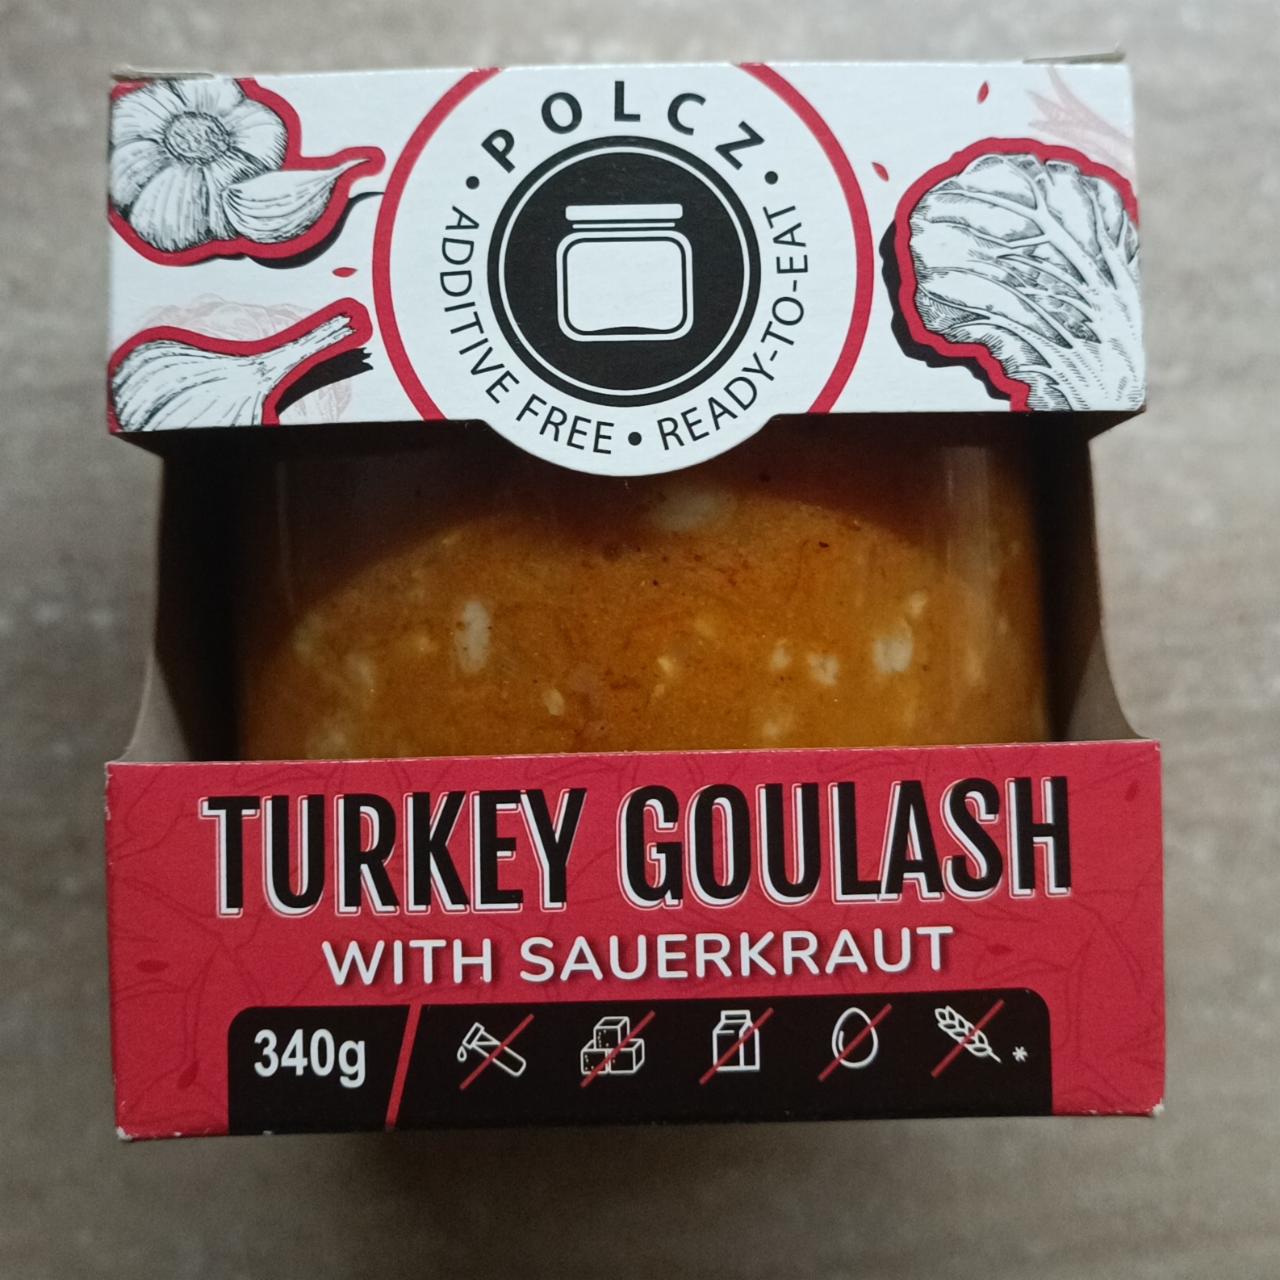 Fotografie - Turkey goulash with sauerkraut Polcz